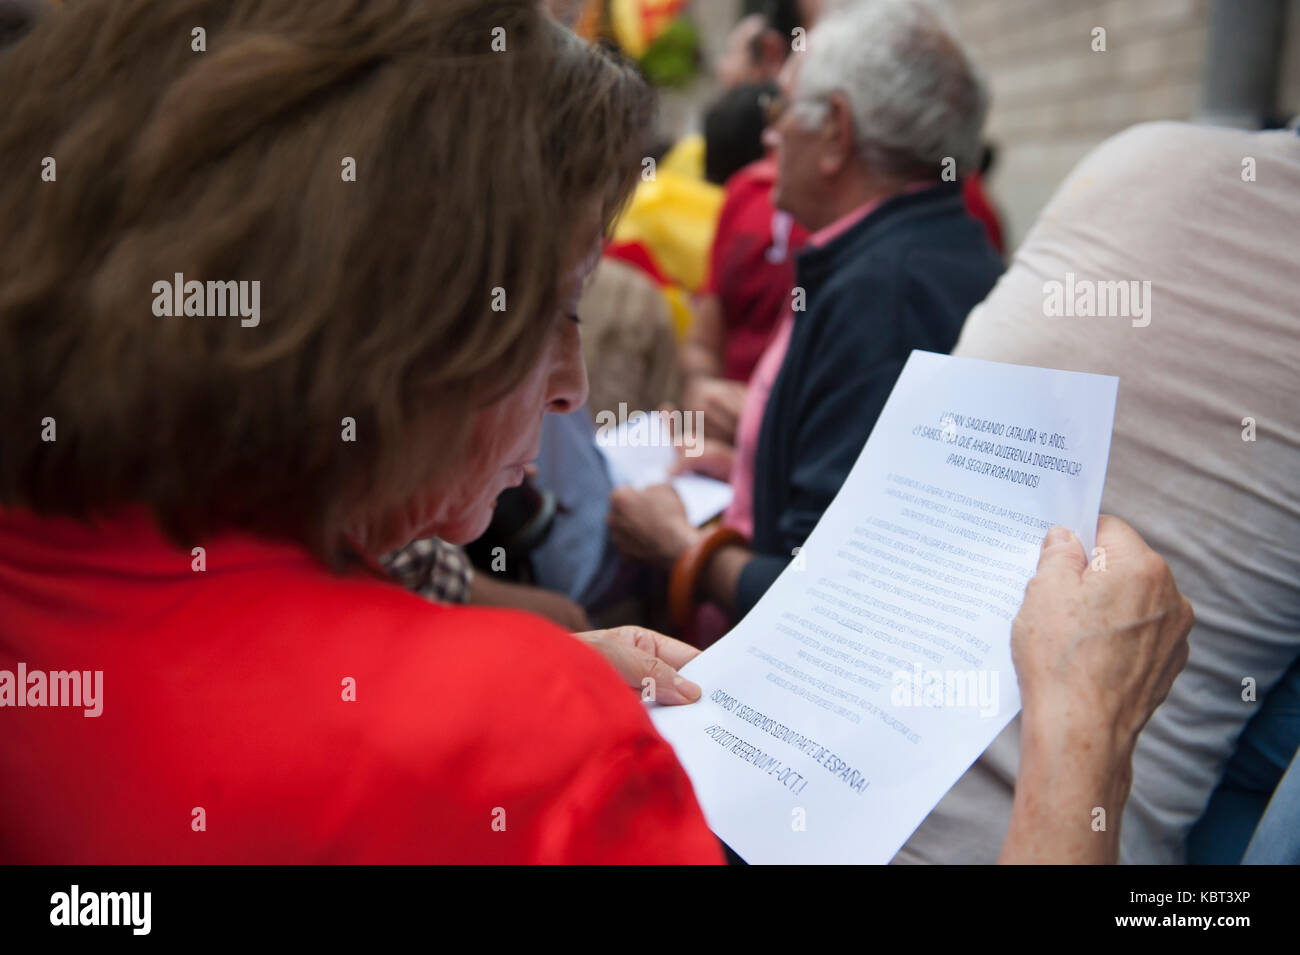 Un referéndum anti mujer leyendo una pancarta que alguien lanzó a la Generalitat. Los manifestantes tomaron las calles de Barcelona para expresar su indignación por el referéndum de independencia de Cataluña que llevará a cabo el 1 de octubre. Foto de stock